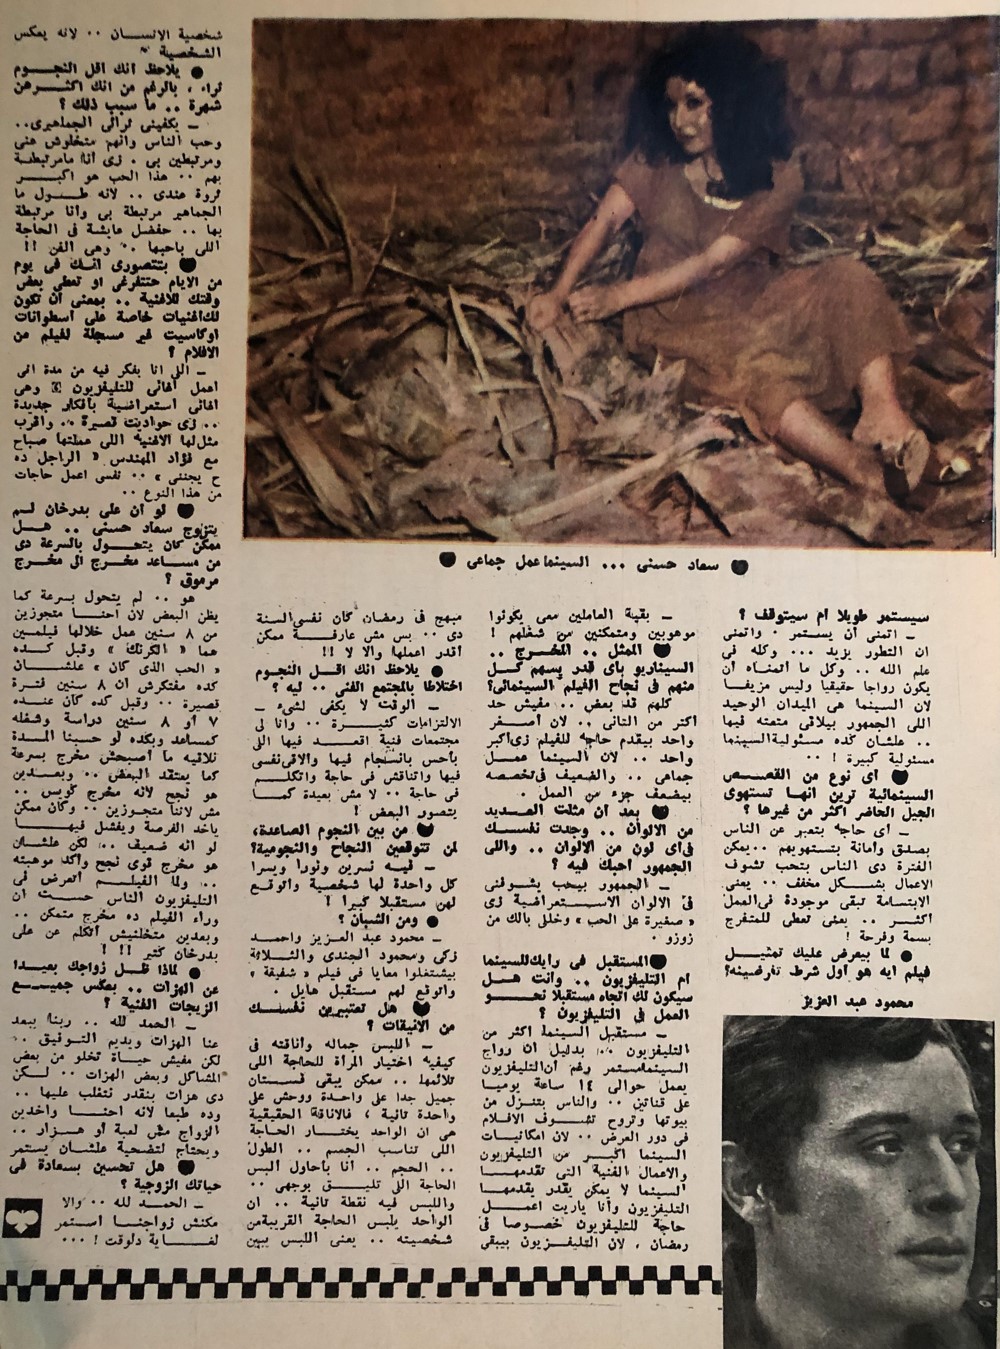 1977 - حوار صحفي : حوار صريح جداً مع سعاد حسني 1977 م 422